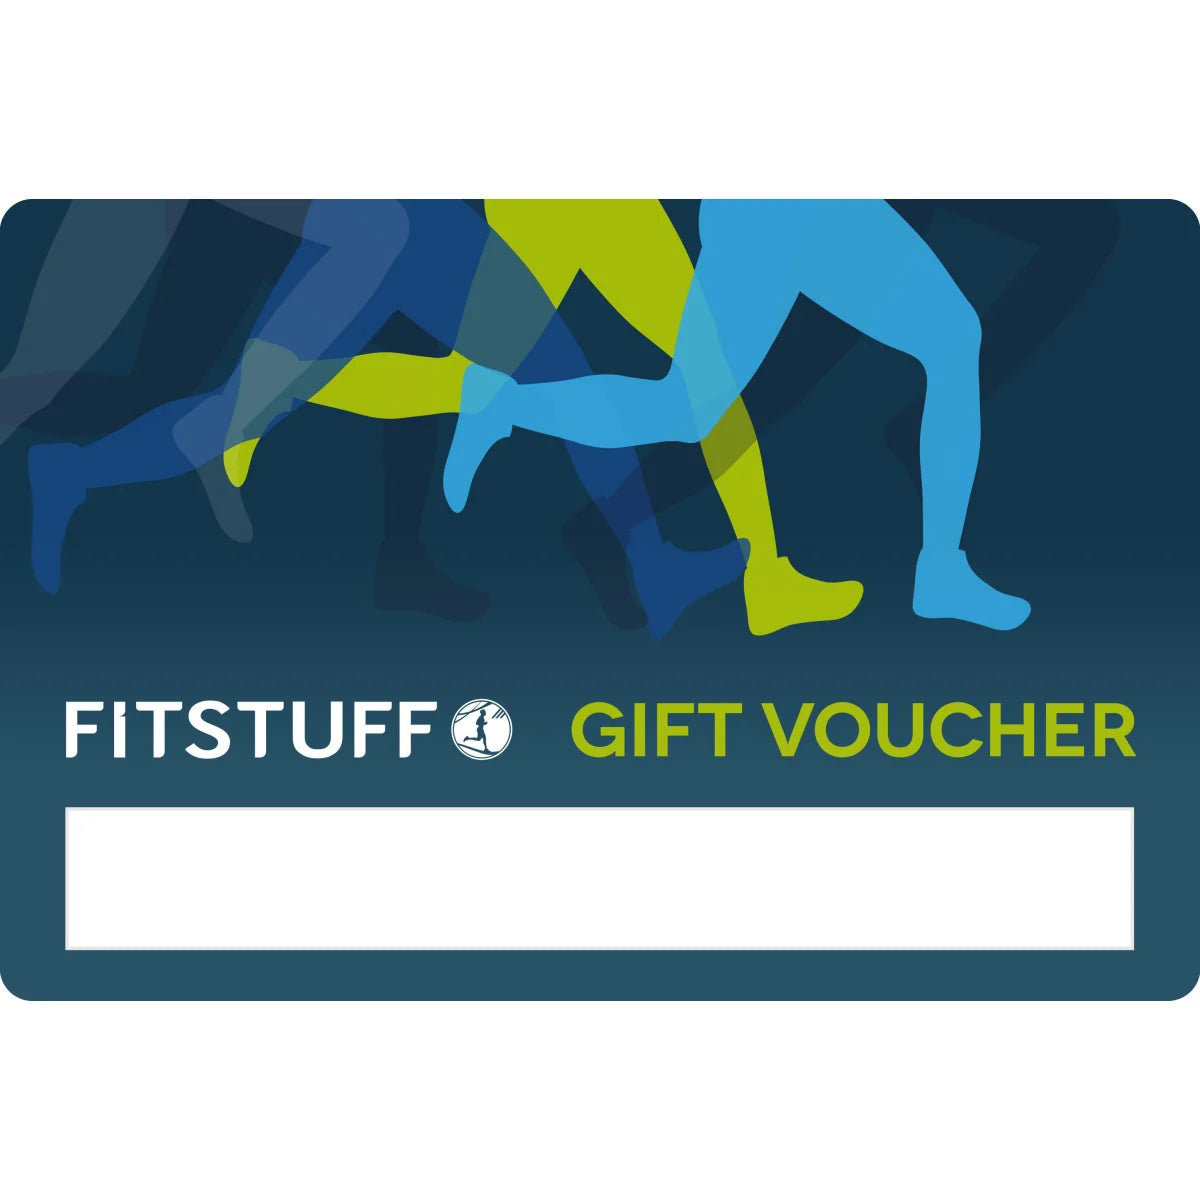 FitStuff Gift Voucher